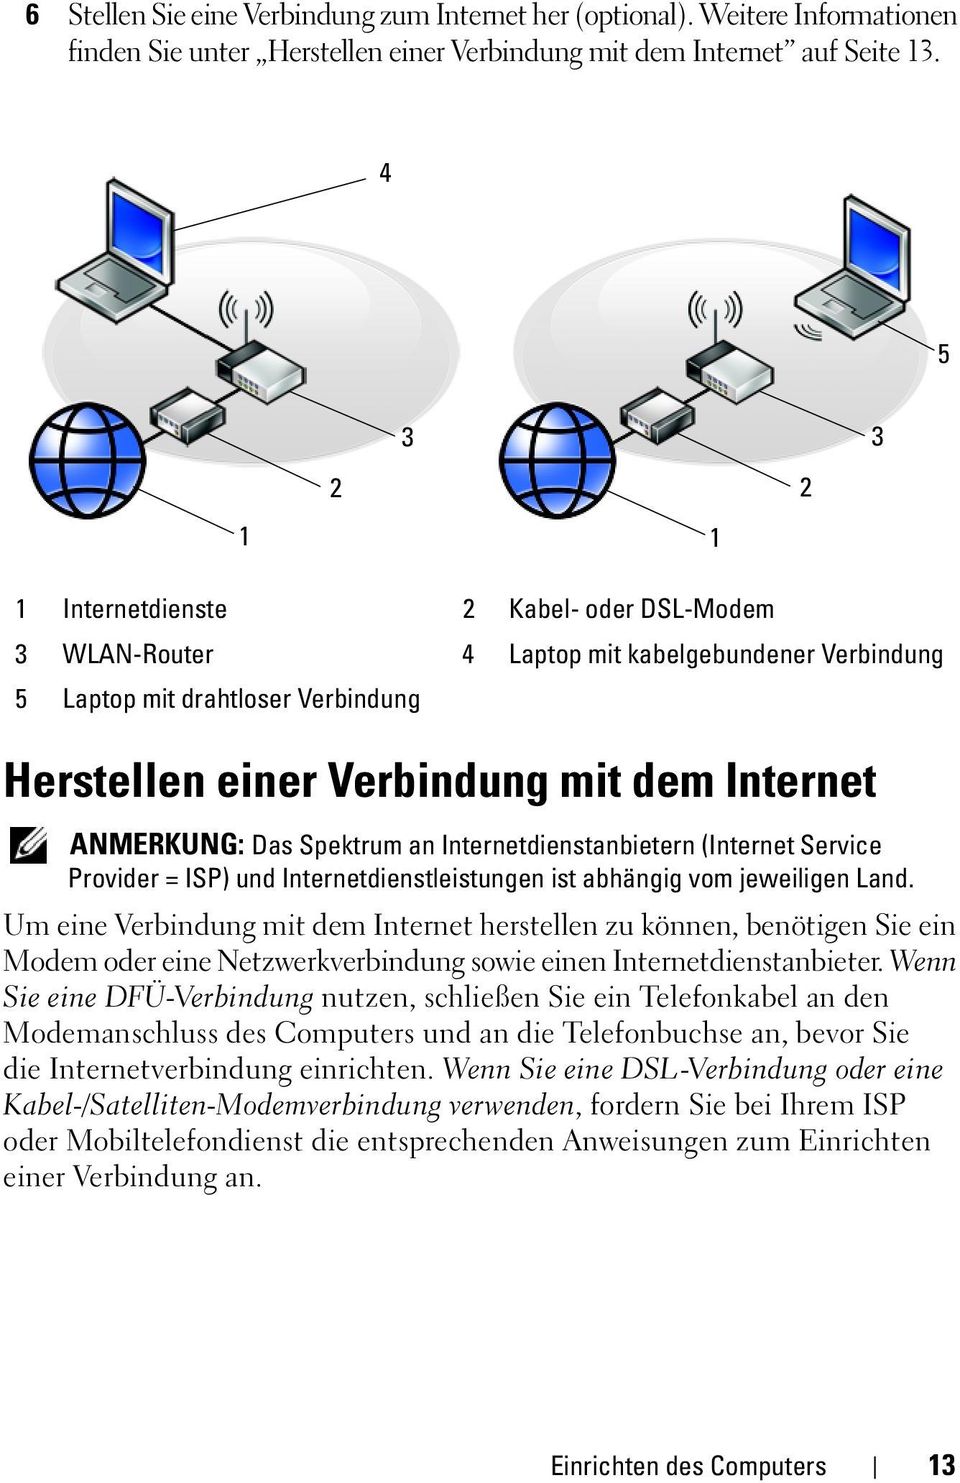 ANMERKUNG: Das Spektrum an Internetdienstanbietern (Internet Service Provider = ISP) und Internetdienstleistungen ist abhängig vom jeweiligen Land.